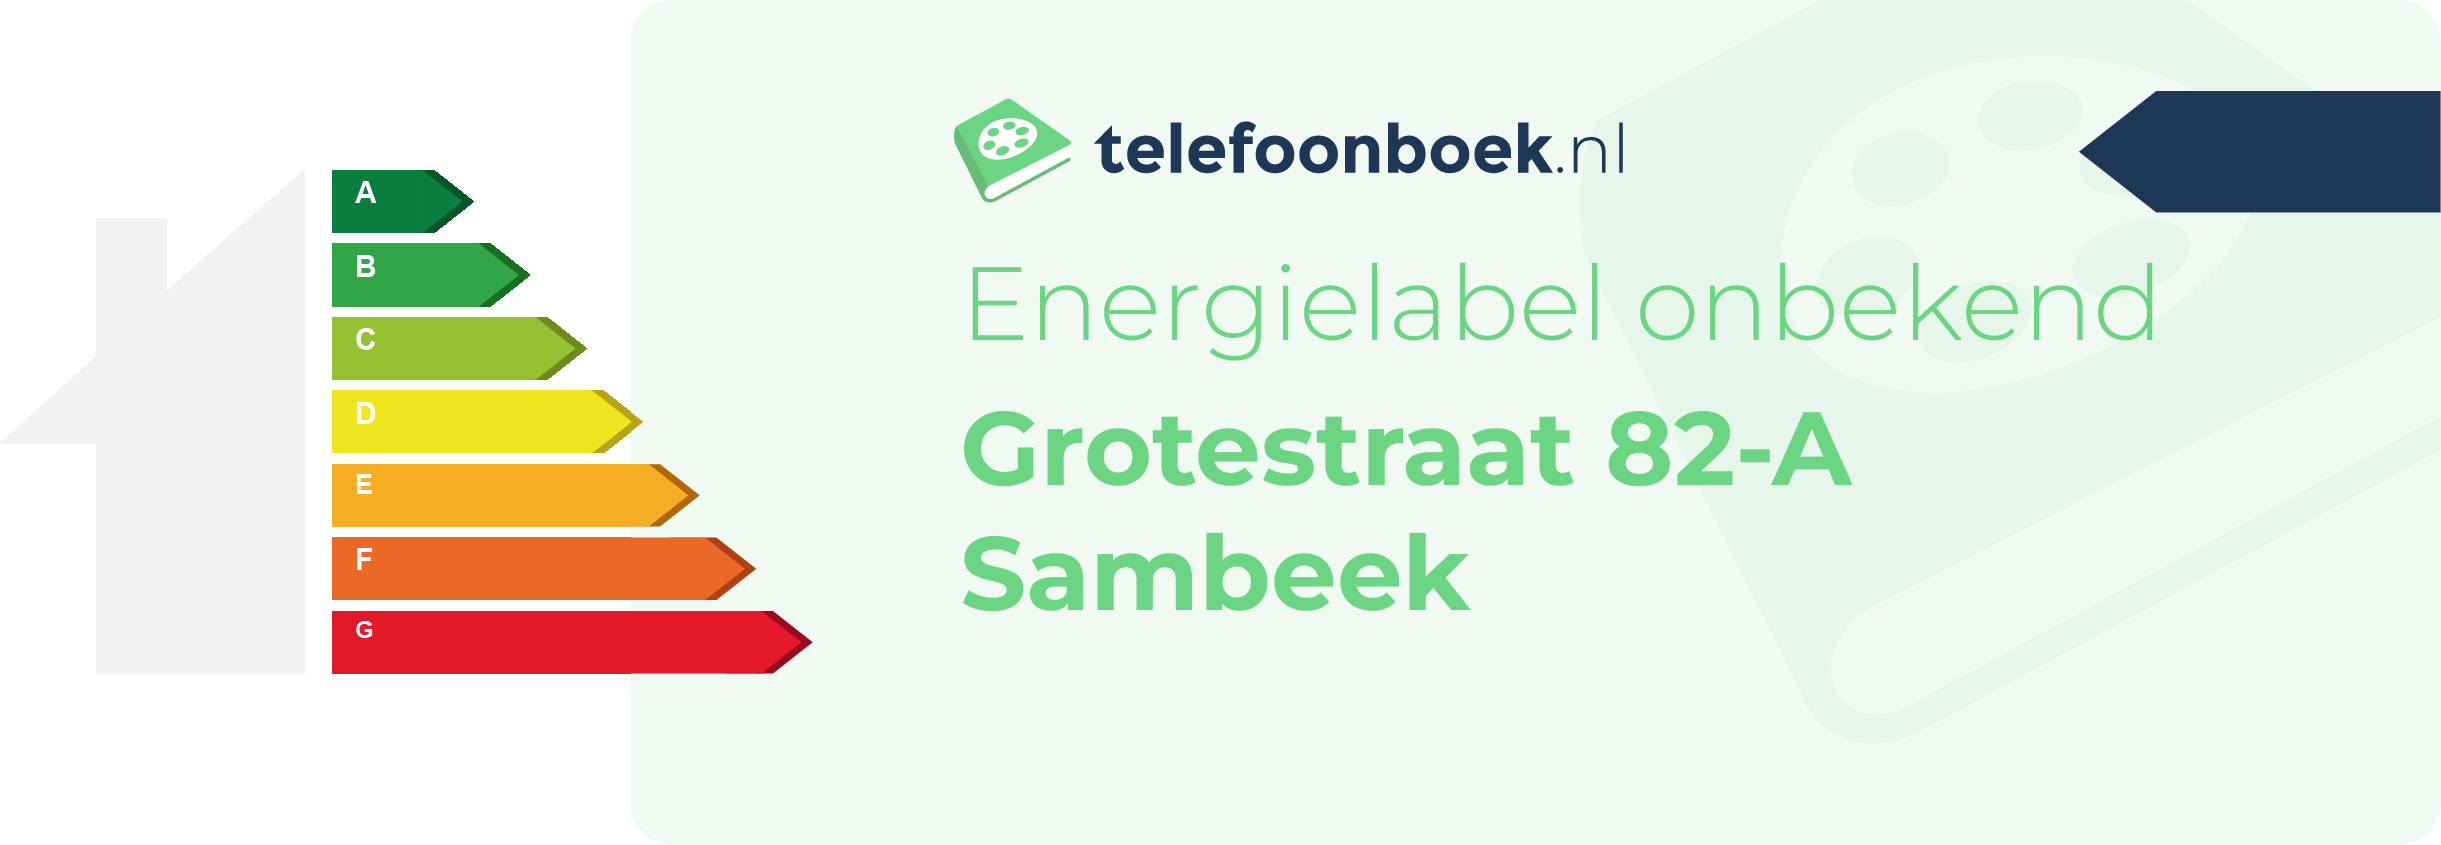 Energielabel Grotestraat 82-A Sambeek